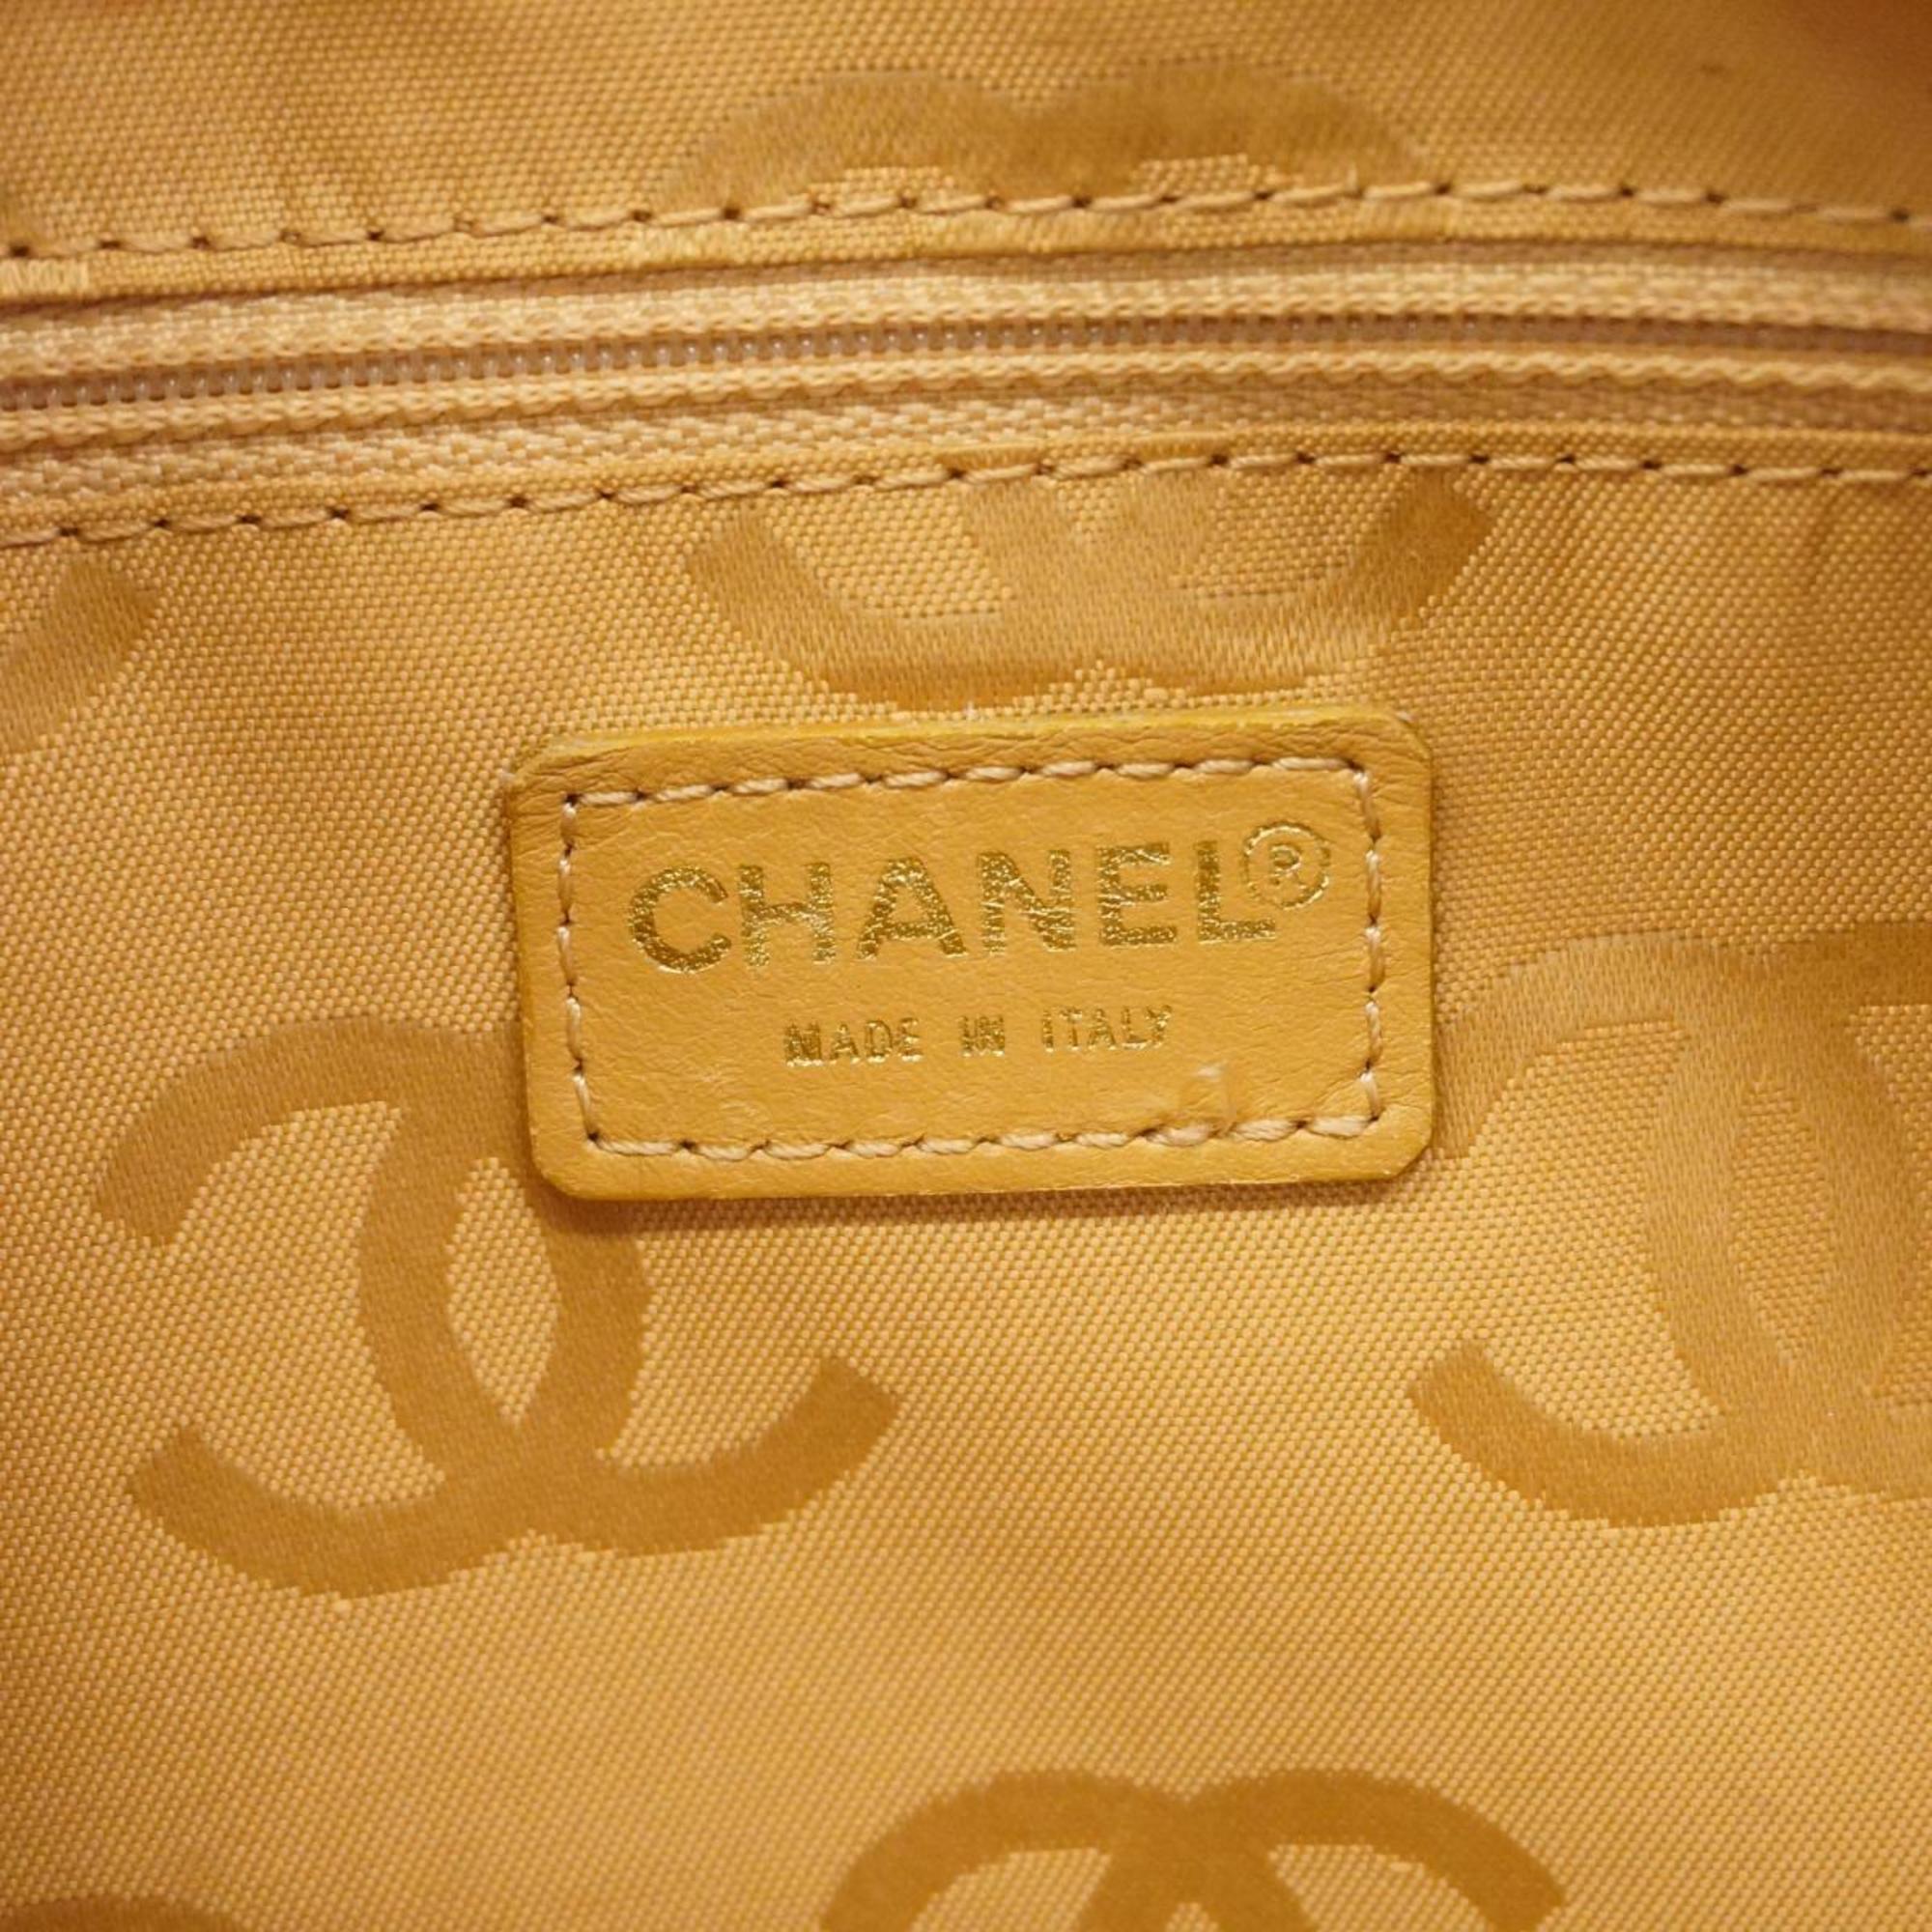 シャネル(Chanel) シャネル ハンドバッグ ワイルドステッチ ラムスキン ベージュ  レディース